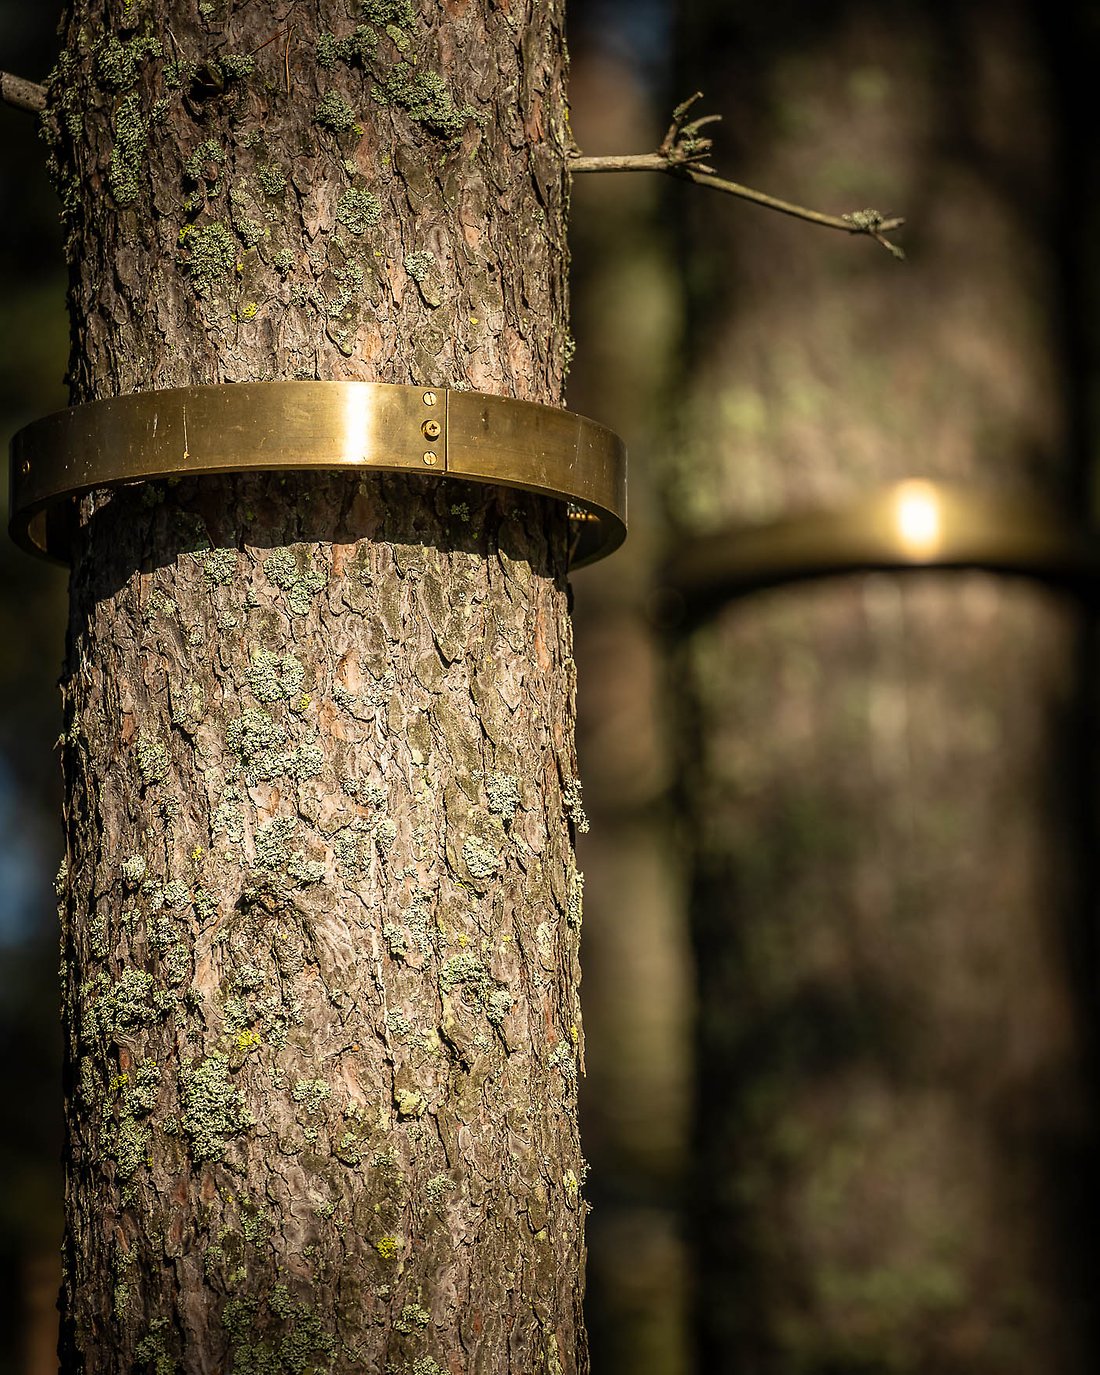 Háldijorbadas, Skyddsandens cirkel, består av mässingsringar uppsatta runt trädstammar. Här i närbild.